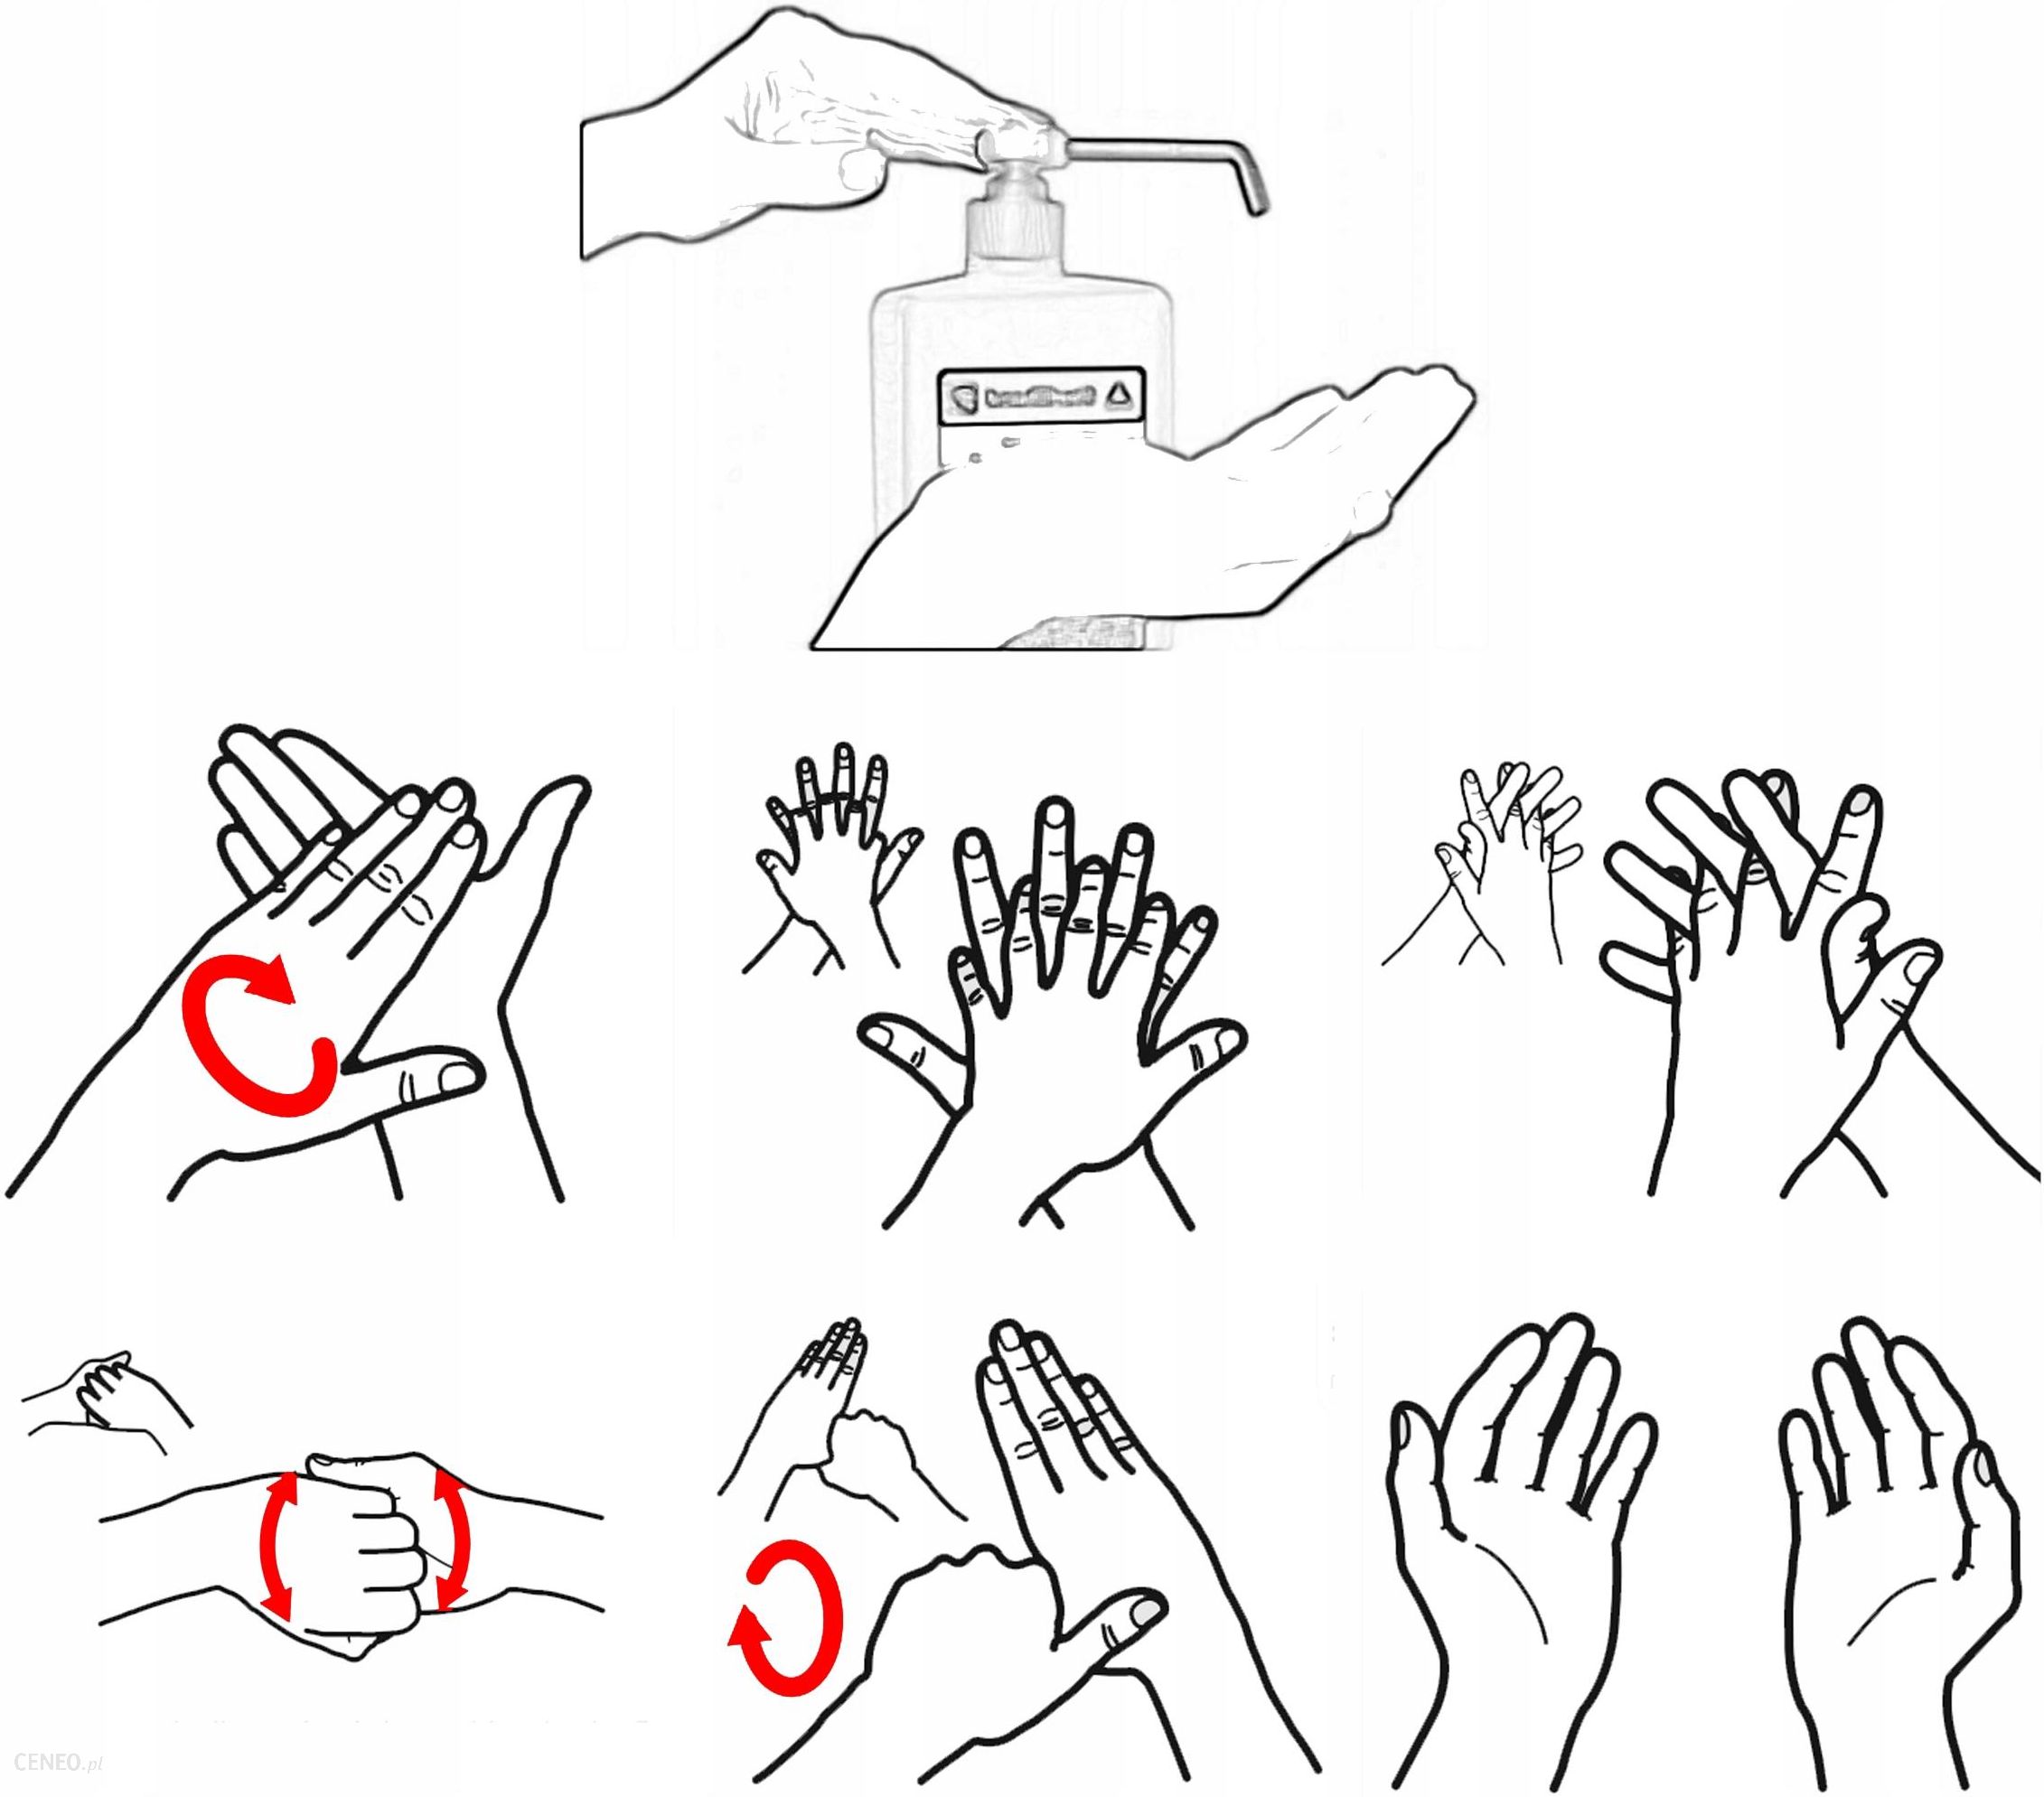 Sterillhand 1 Litr - Preparat Do Dezynfekcji Rąk I Skóry